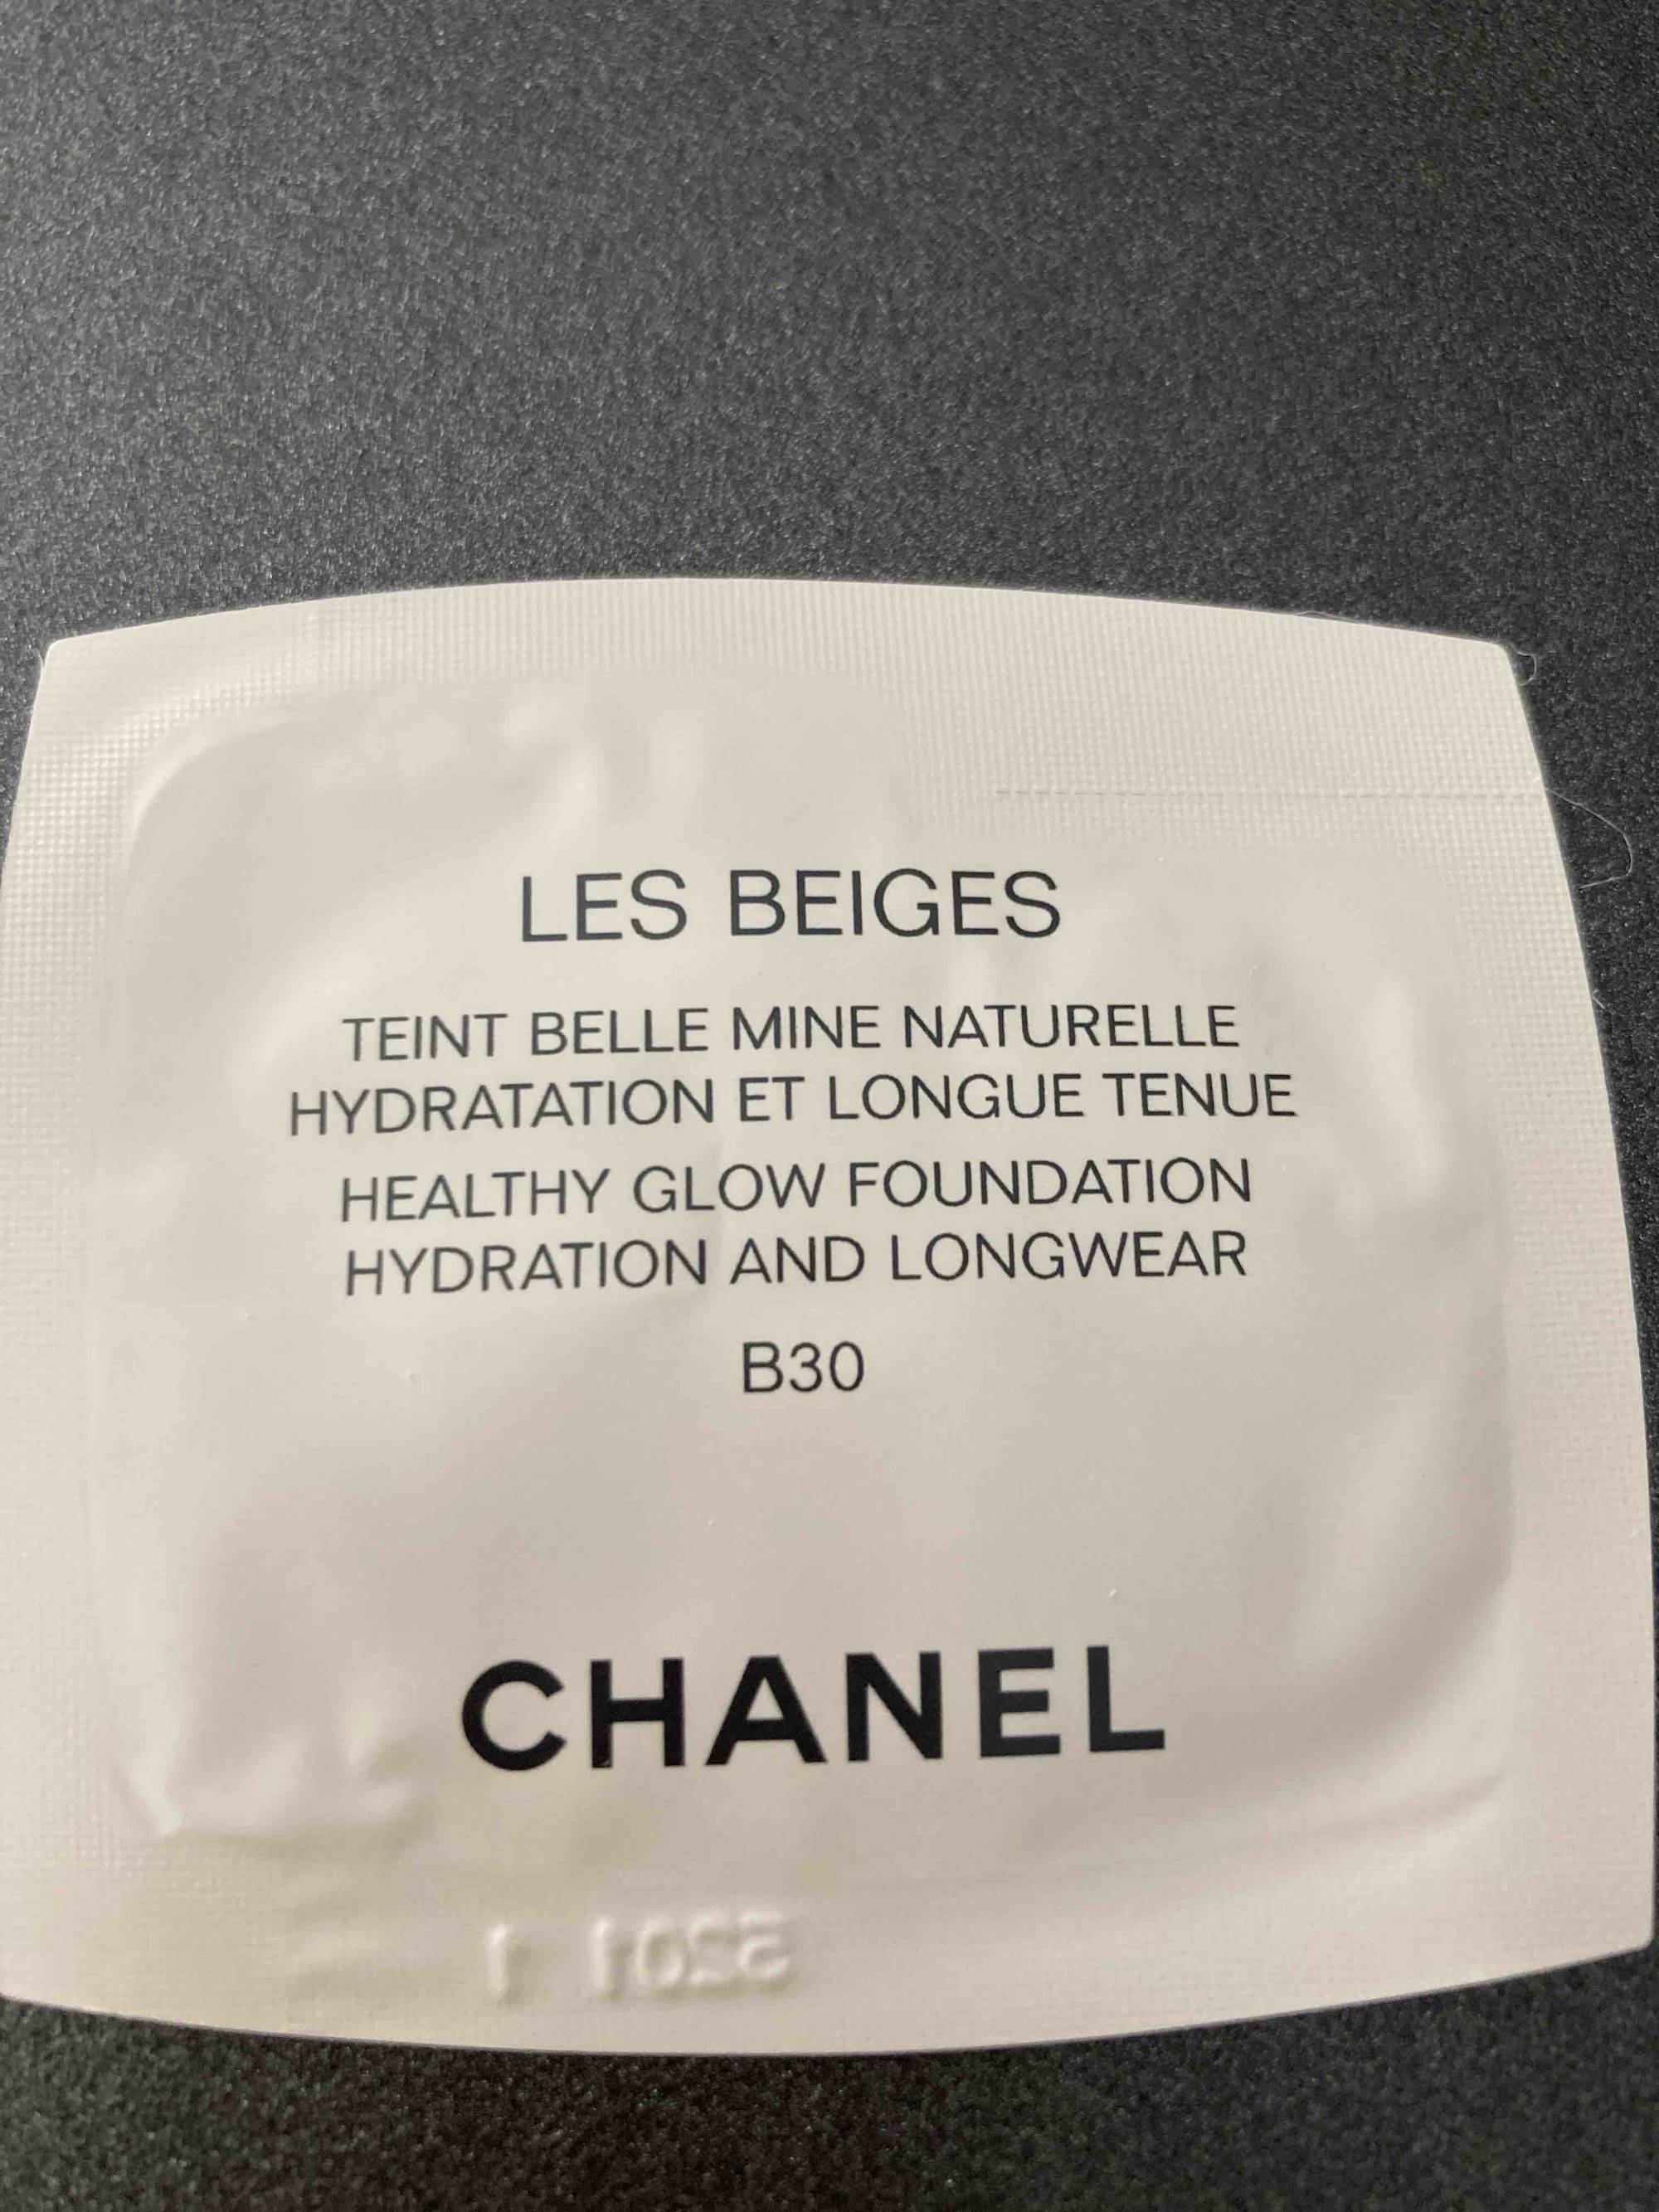 CHANEL - Les Beiges - Teint belle mine naturelle hydratation et longue tenue